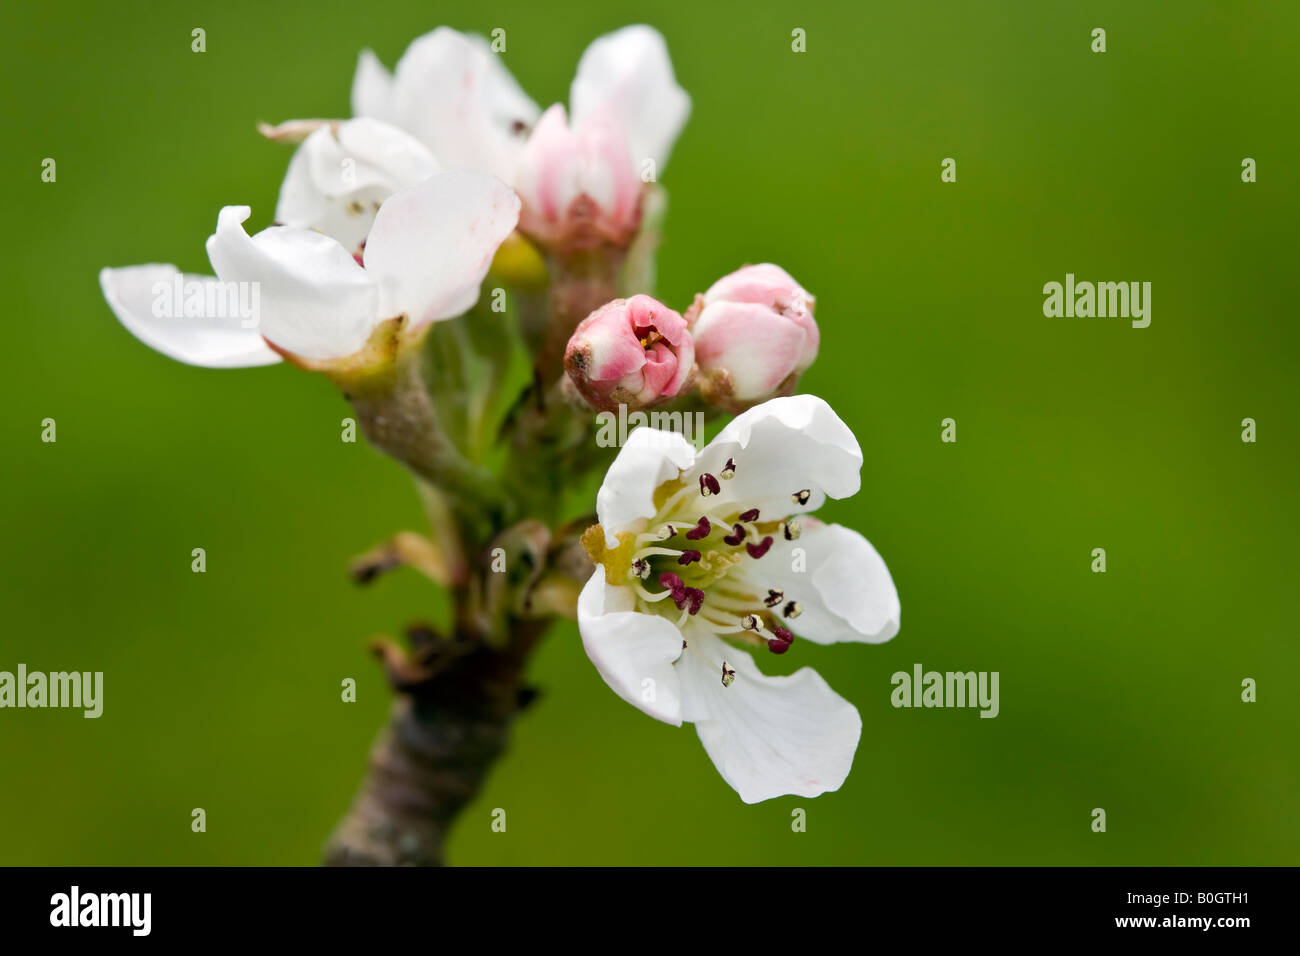 Fiore di pero immagini e fotografie stock ad alta risoluzione - Alamy